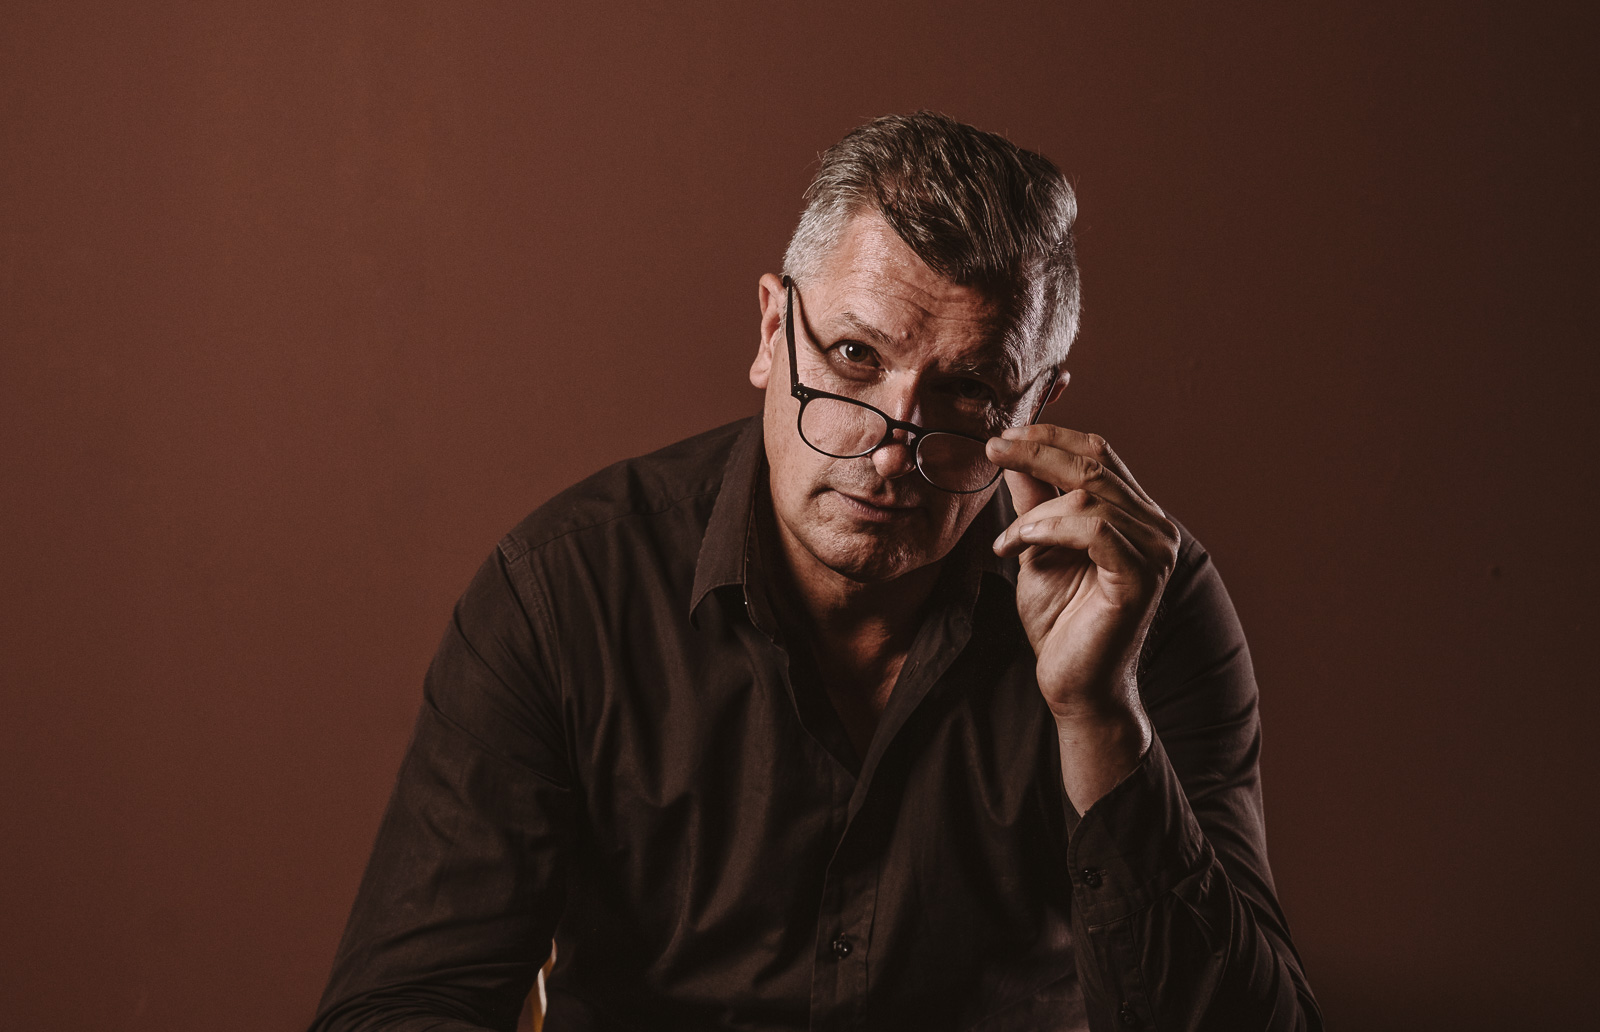 Porträtshooting - Gilbert Köhne vom Konzeptstore Herzblut nimmt seine Brille ab